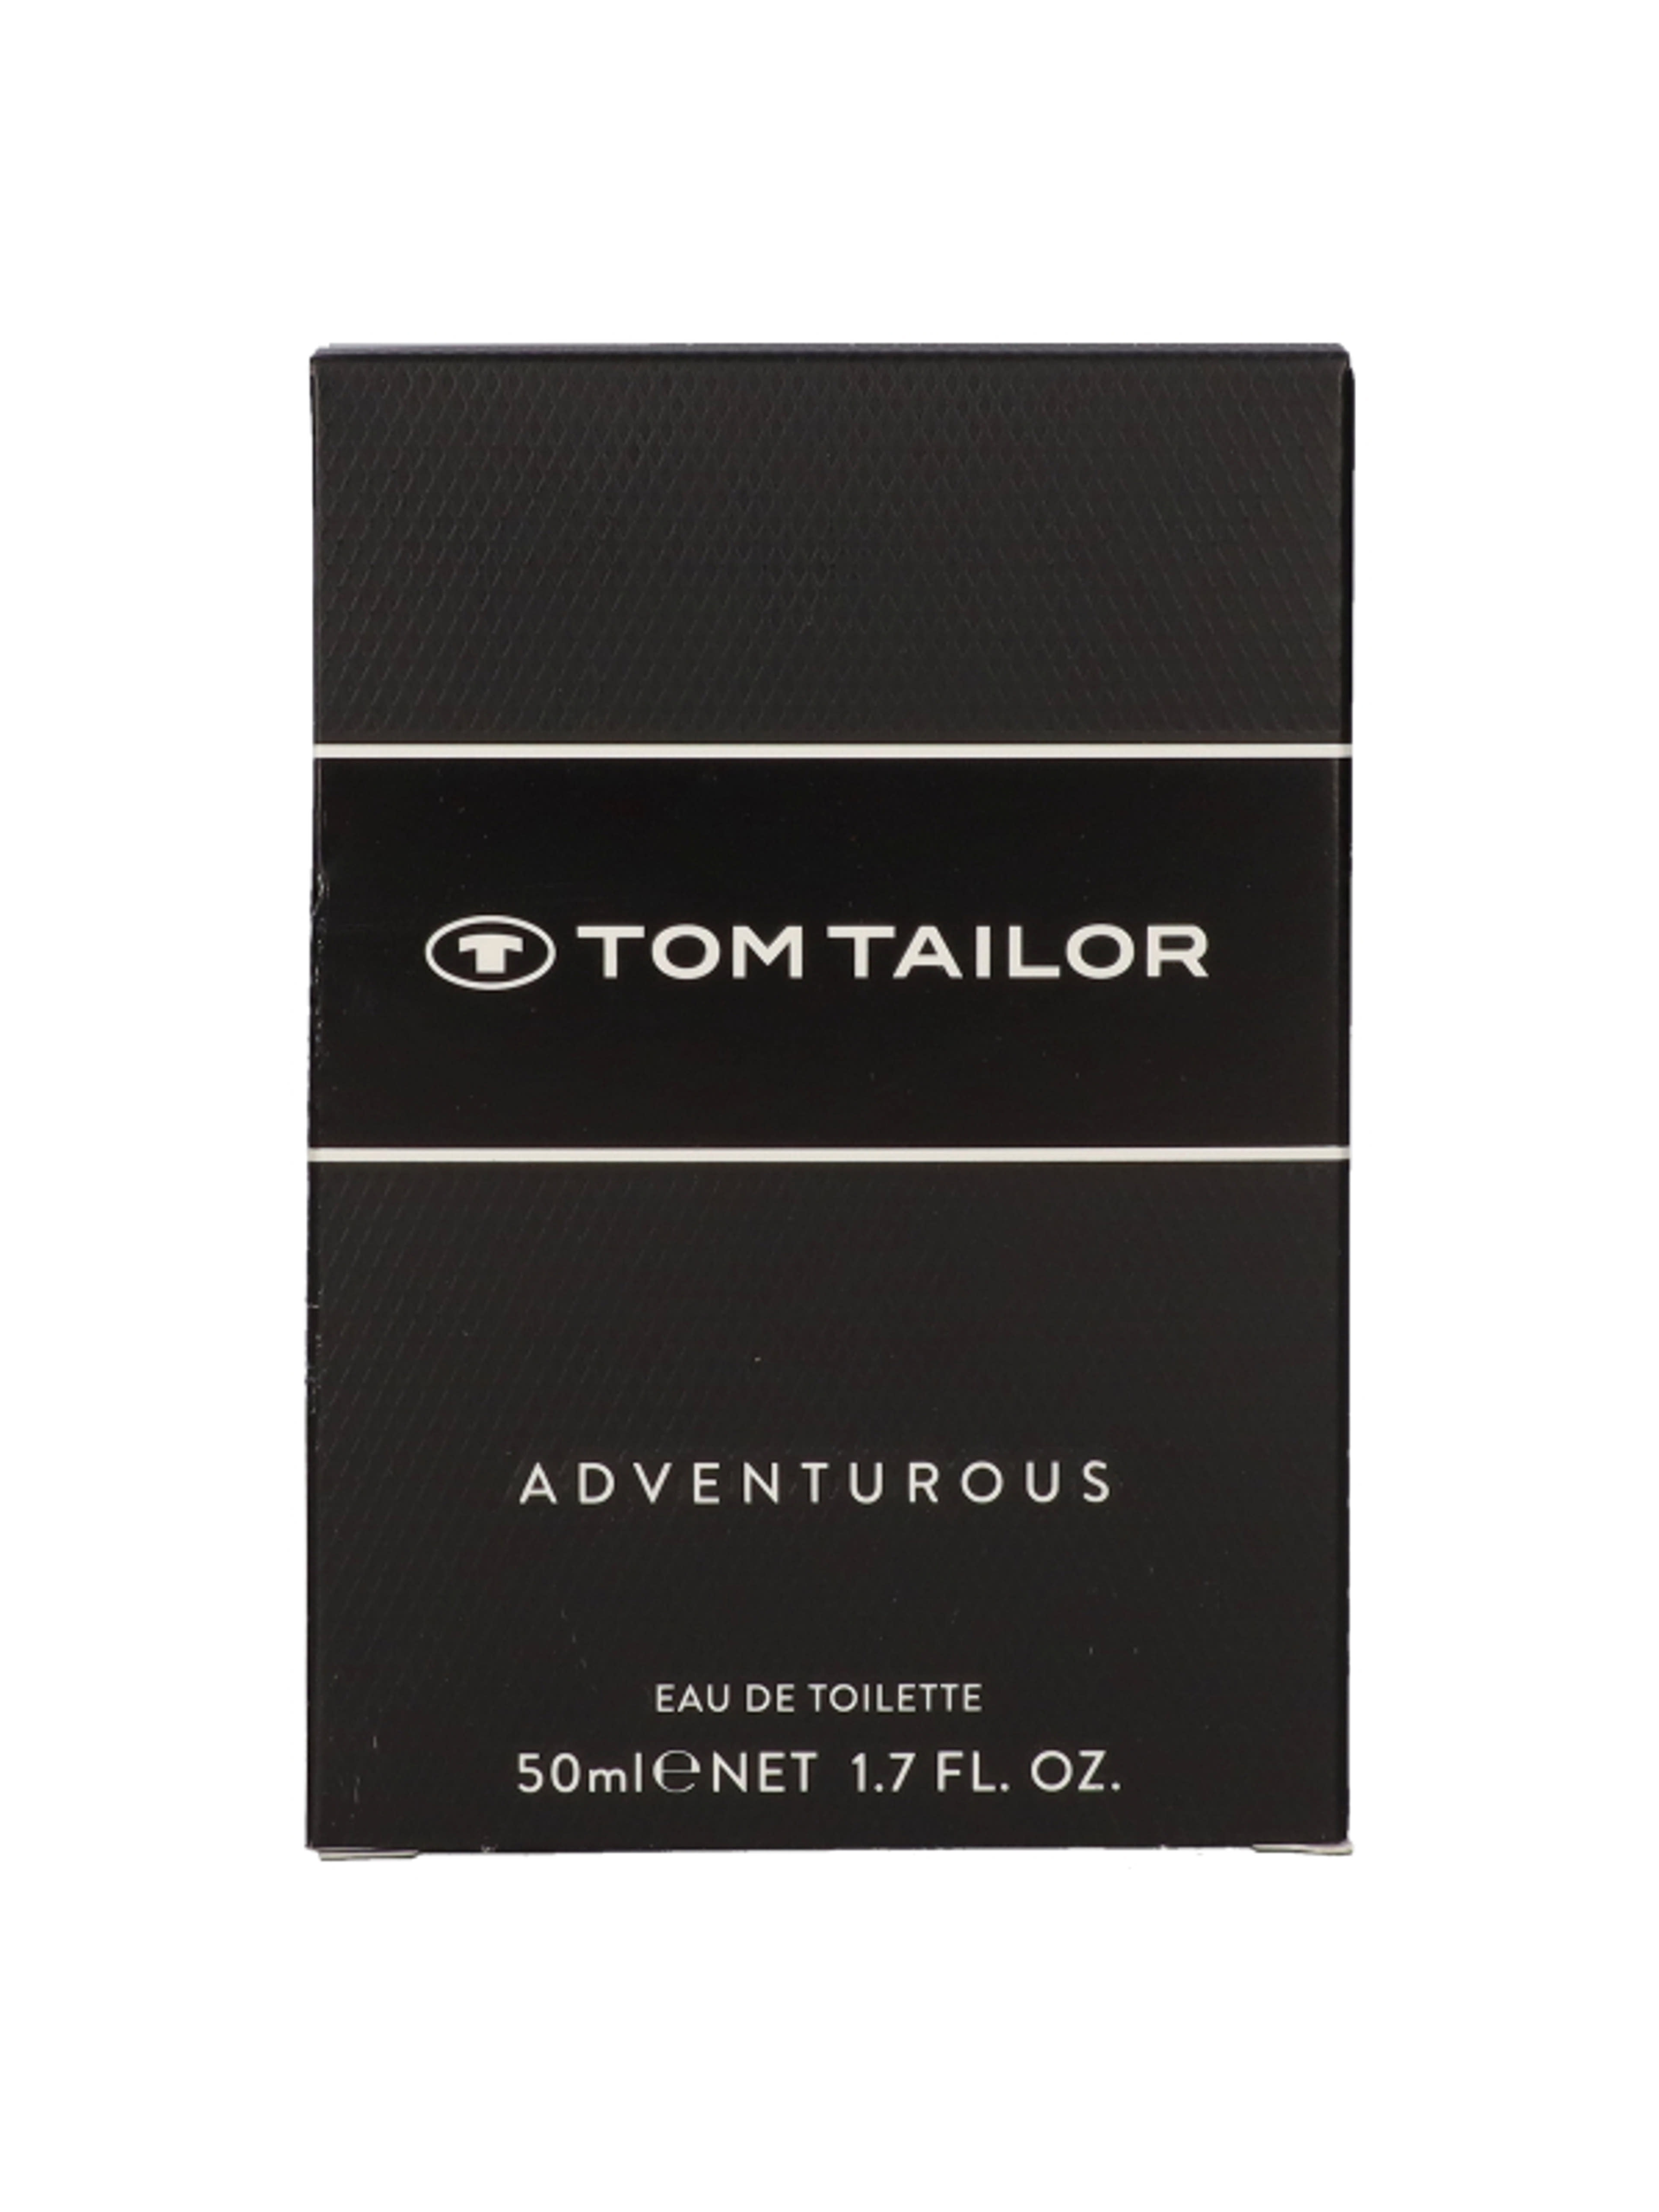 Tom Tailor Adventurous Eau de Toilette - 50 ml-2